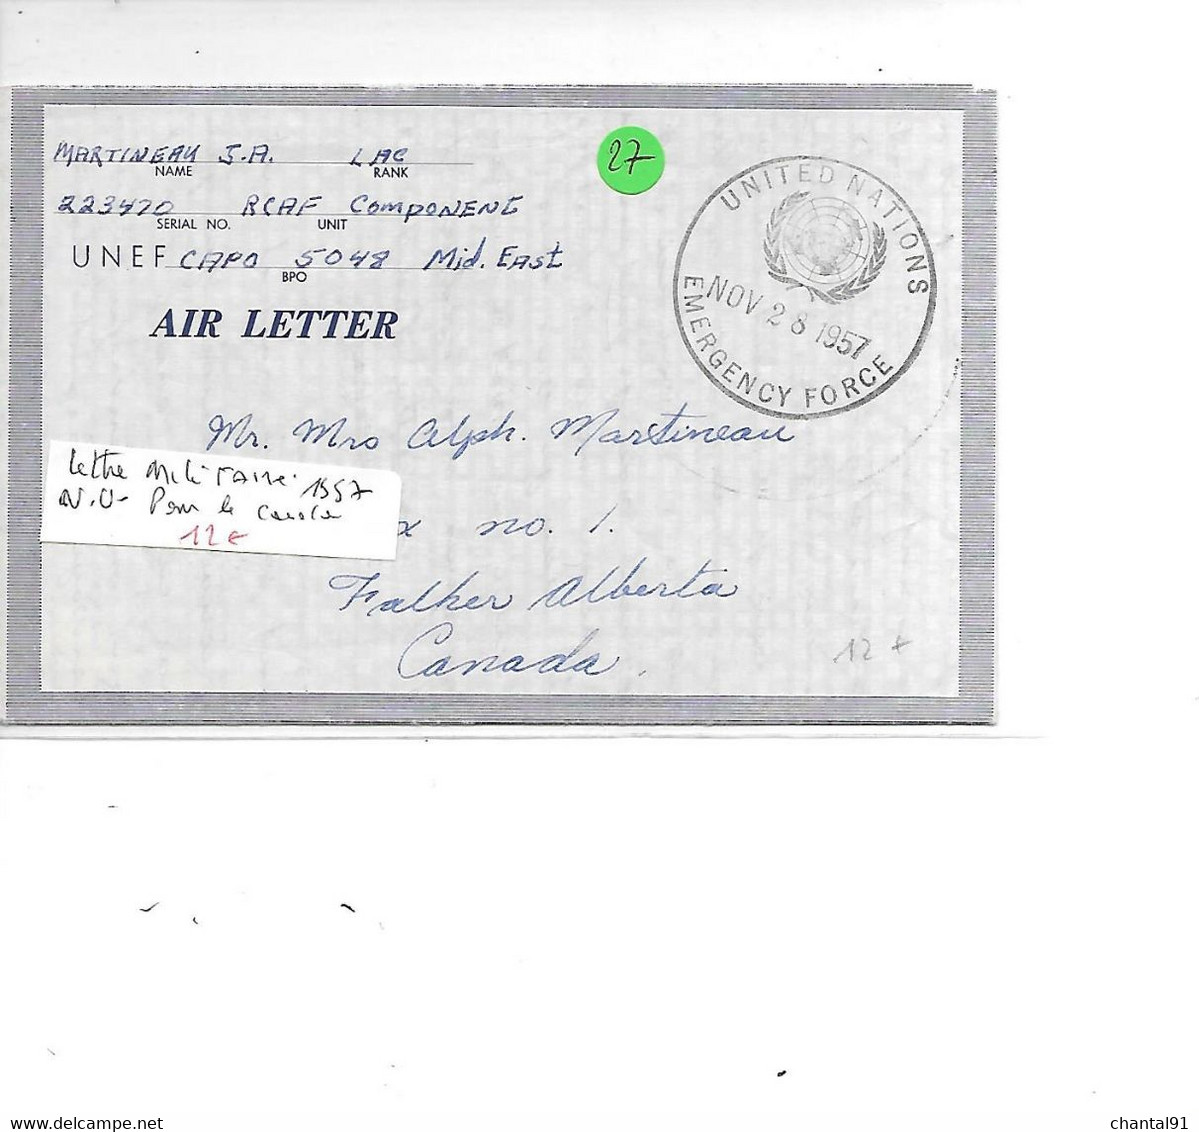 NATIONS UNIES LETTRE MILITAIRE 1957 POUR LA CANADA - Lettres & Documents